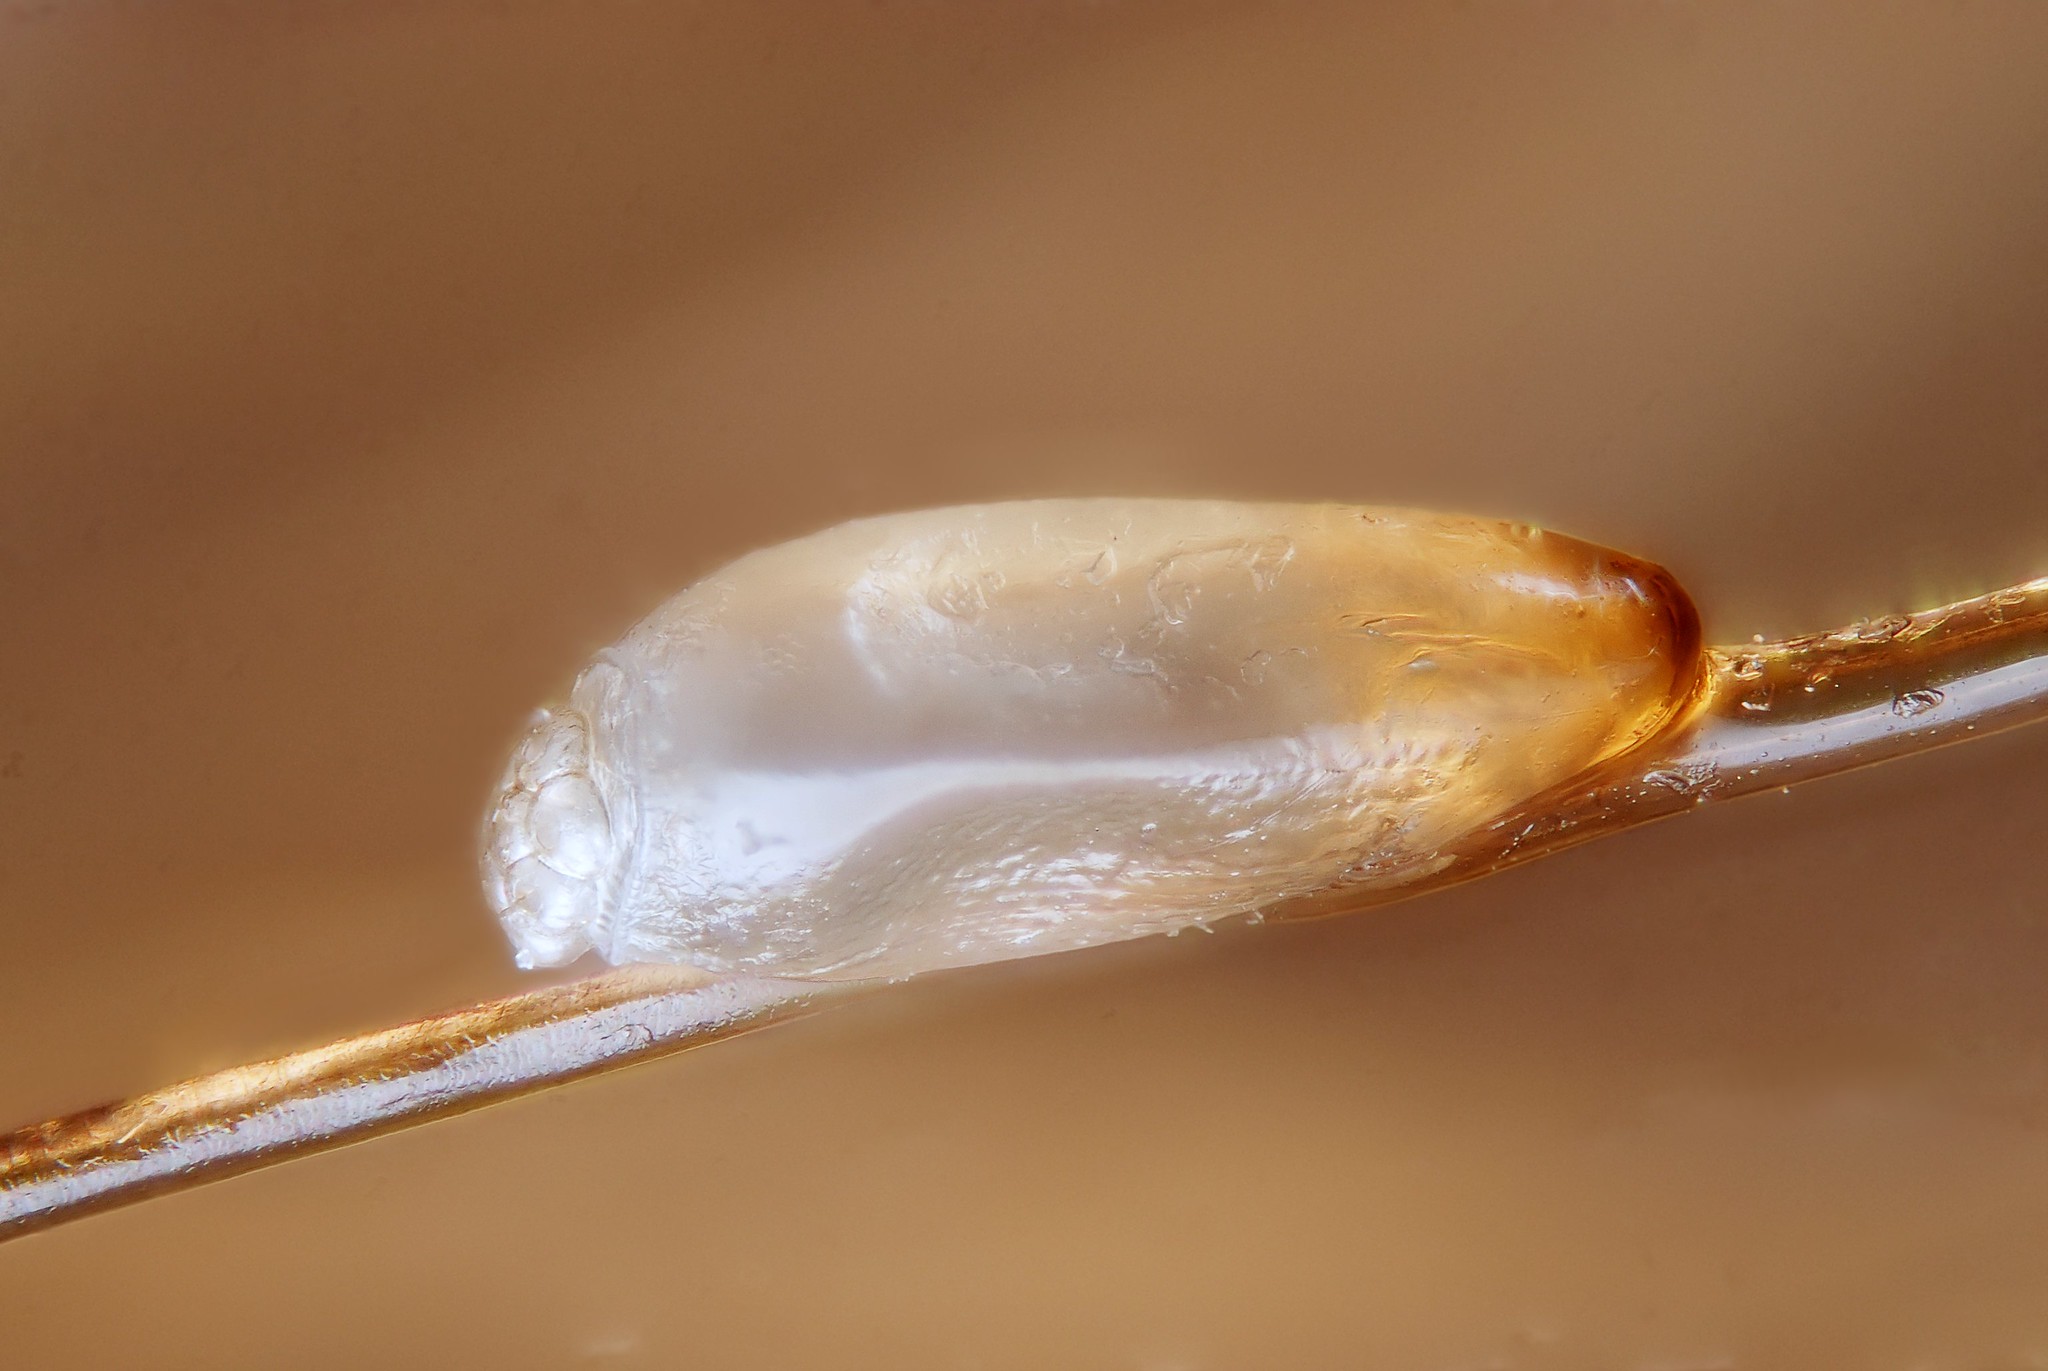 Human head louse egg (nit)